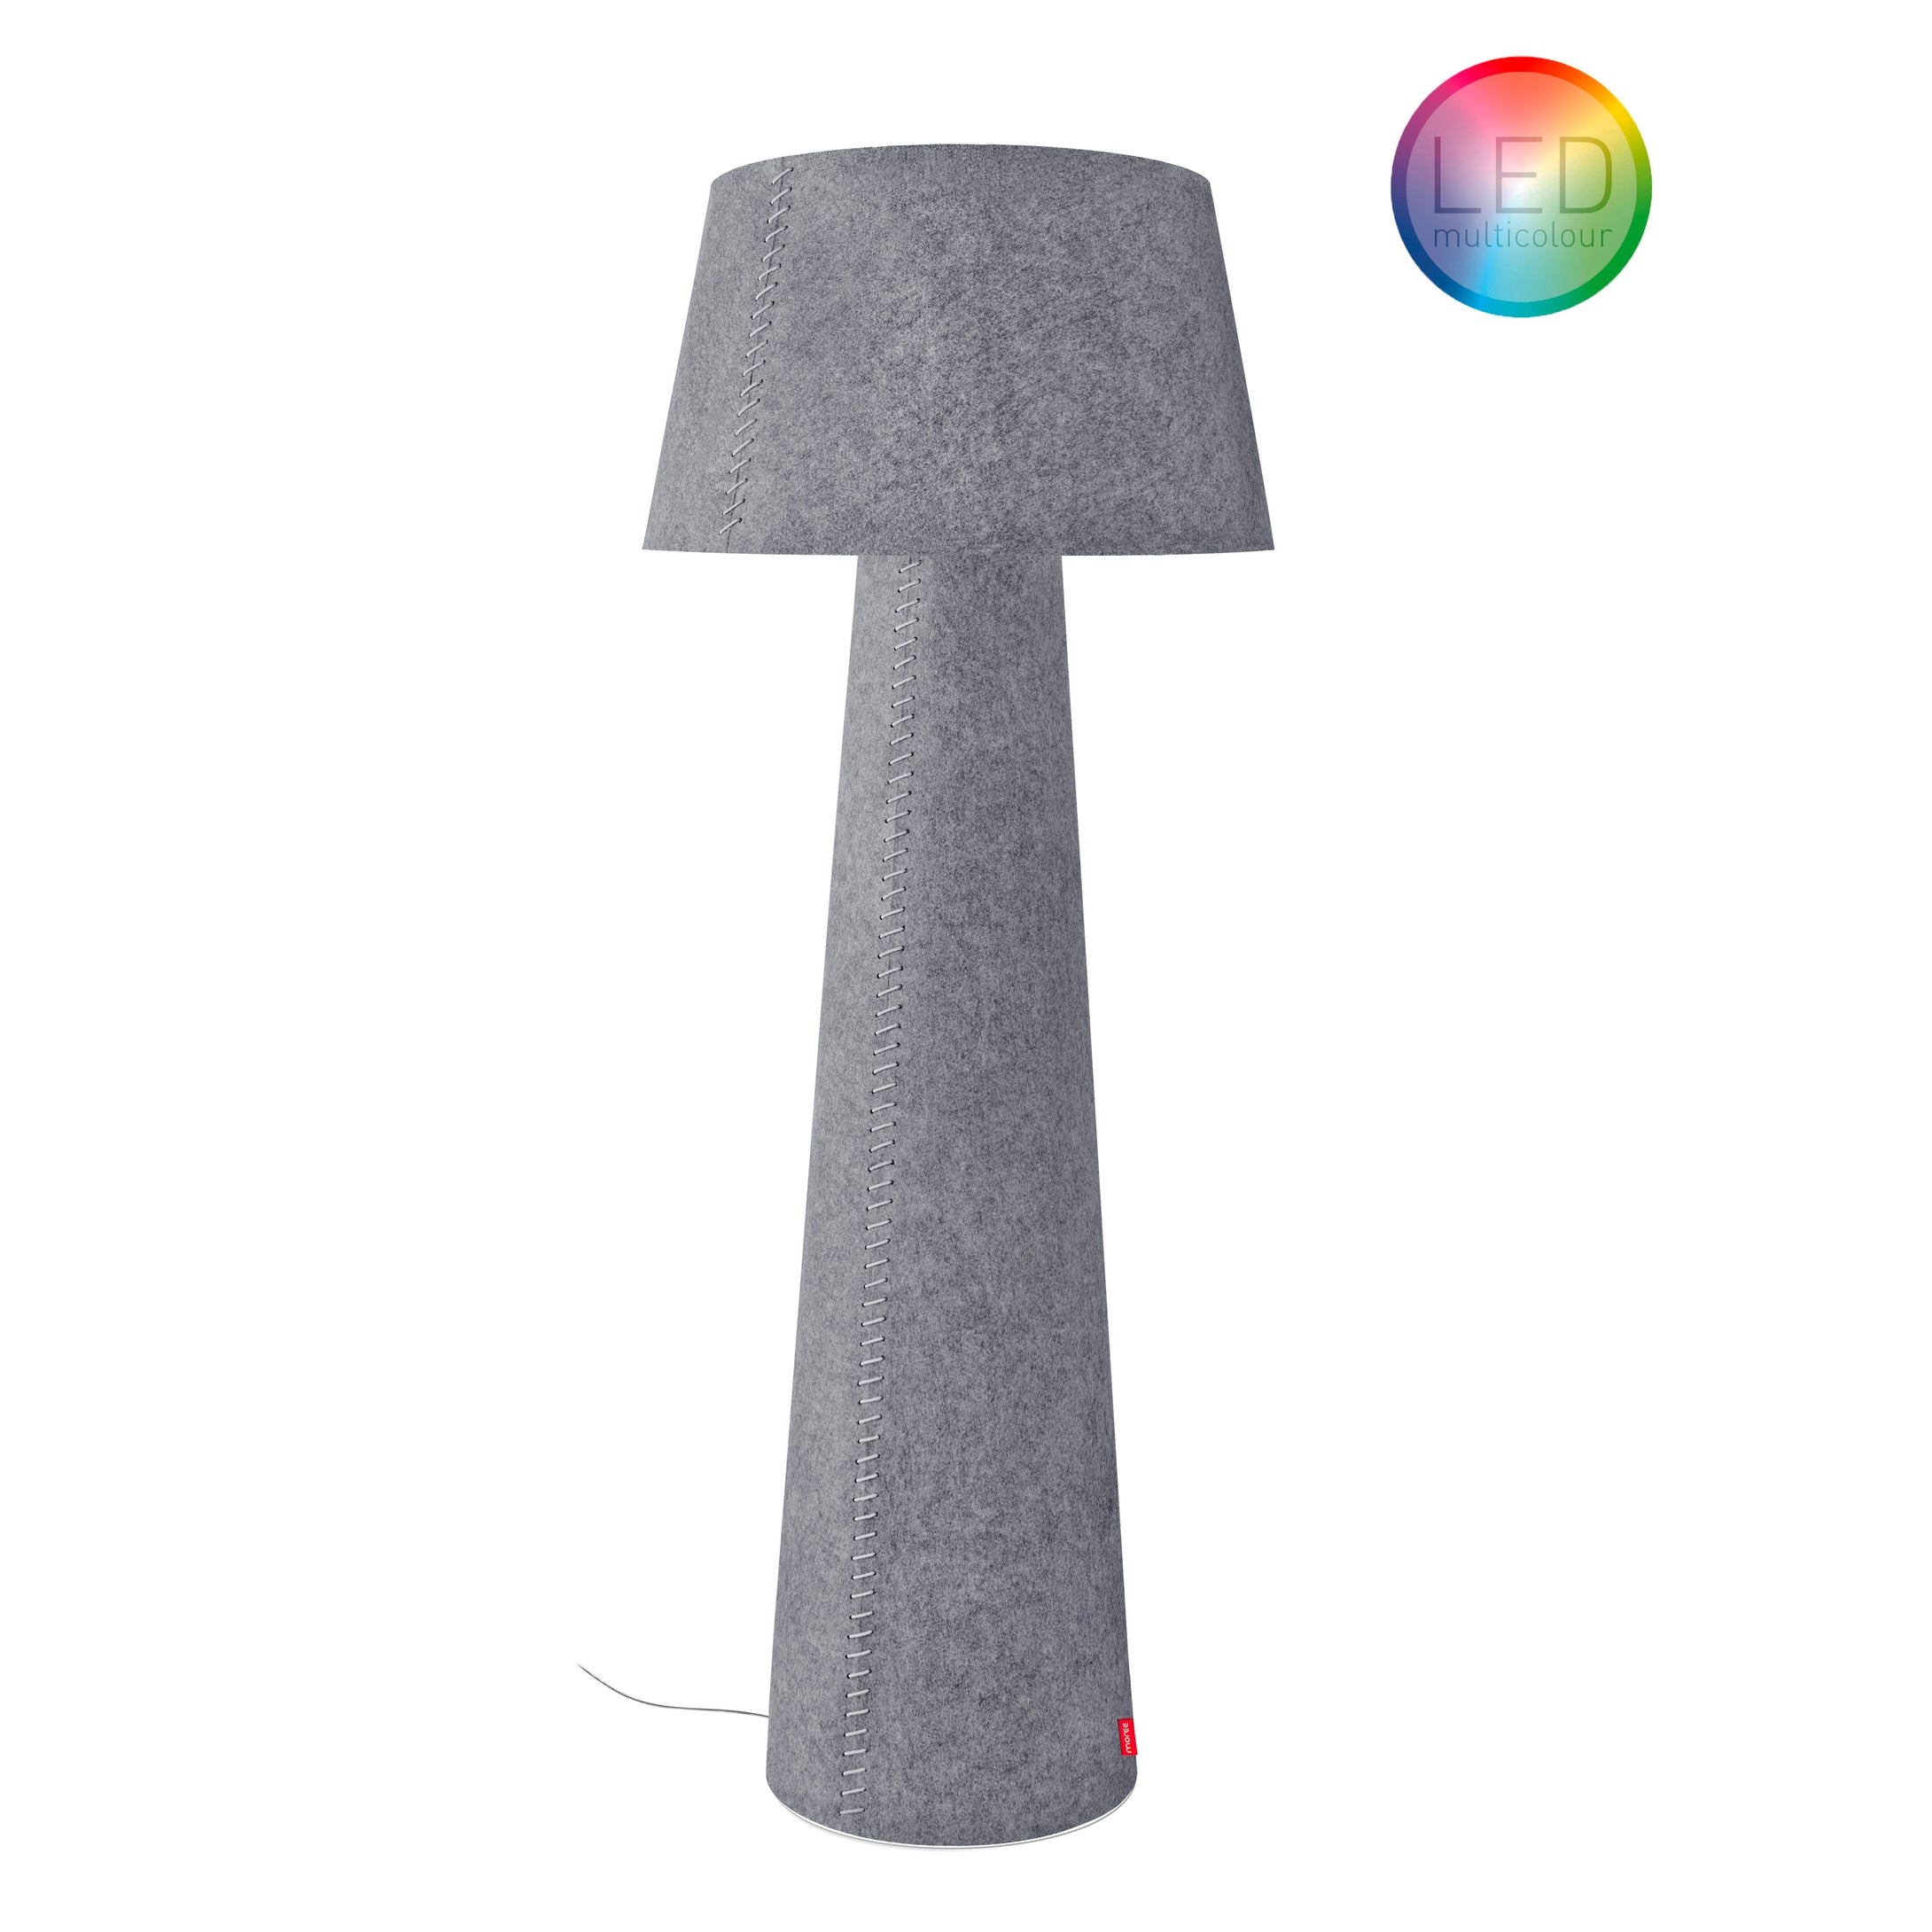 Alice XL-LED, Stehlampe von Moree mit konisch zulaufendem Fuß; die ganze Lampe bespannt mit grauem Filz, der runde Lampenschirm ist schwenkbar, Fernbedienung inklusive.